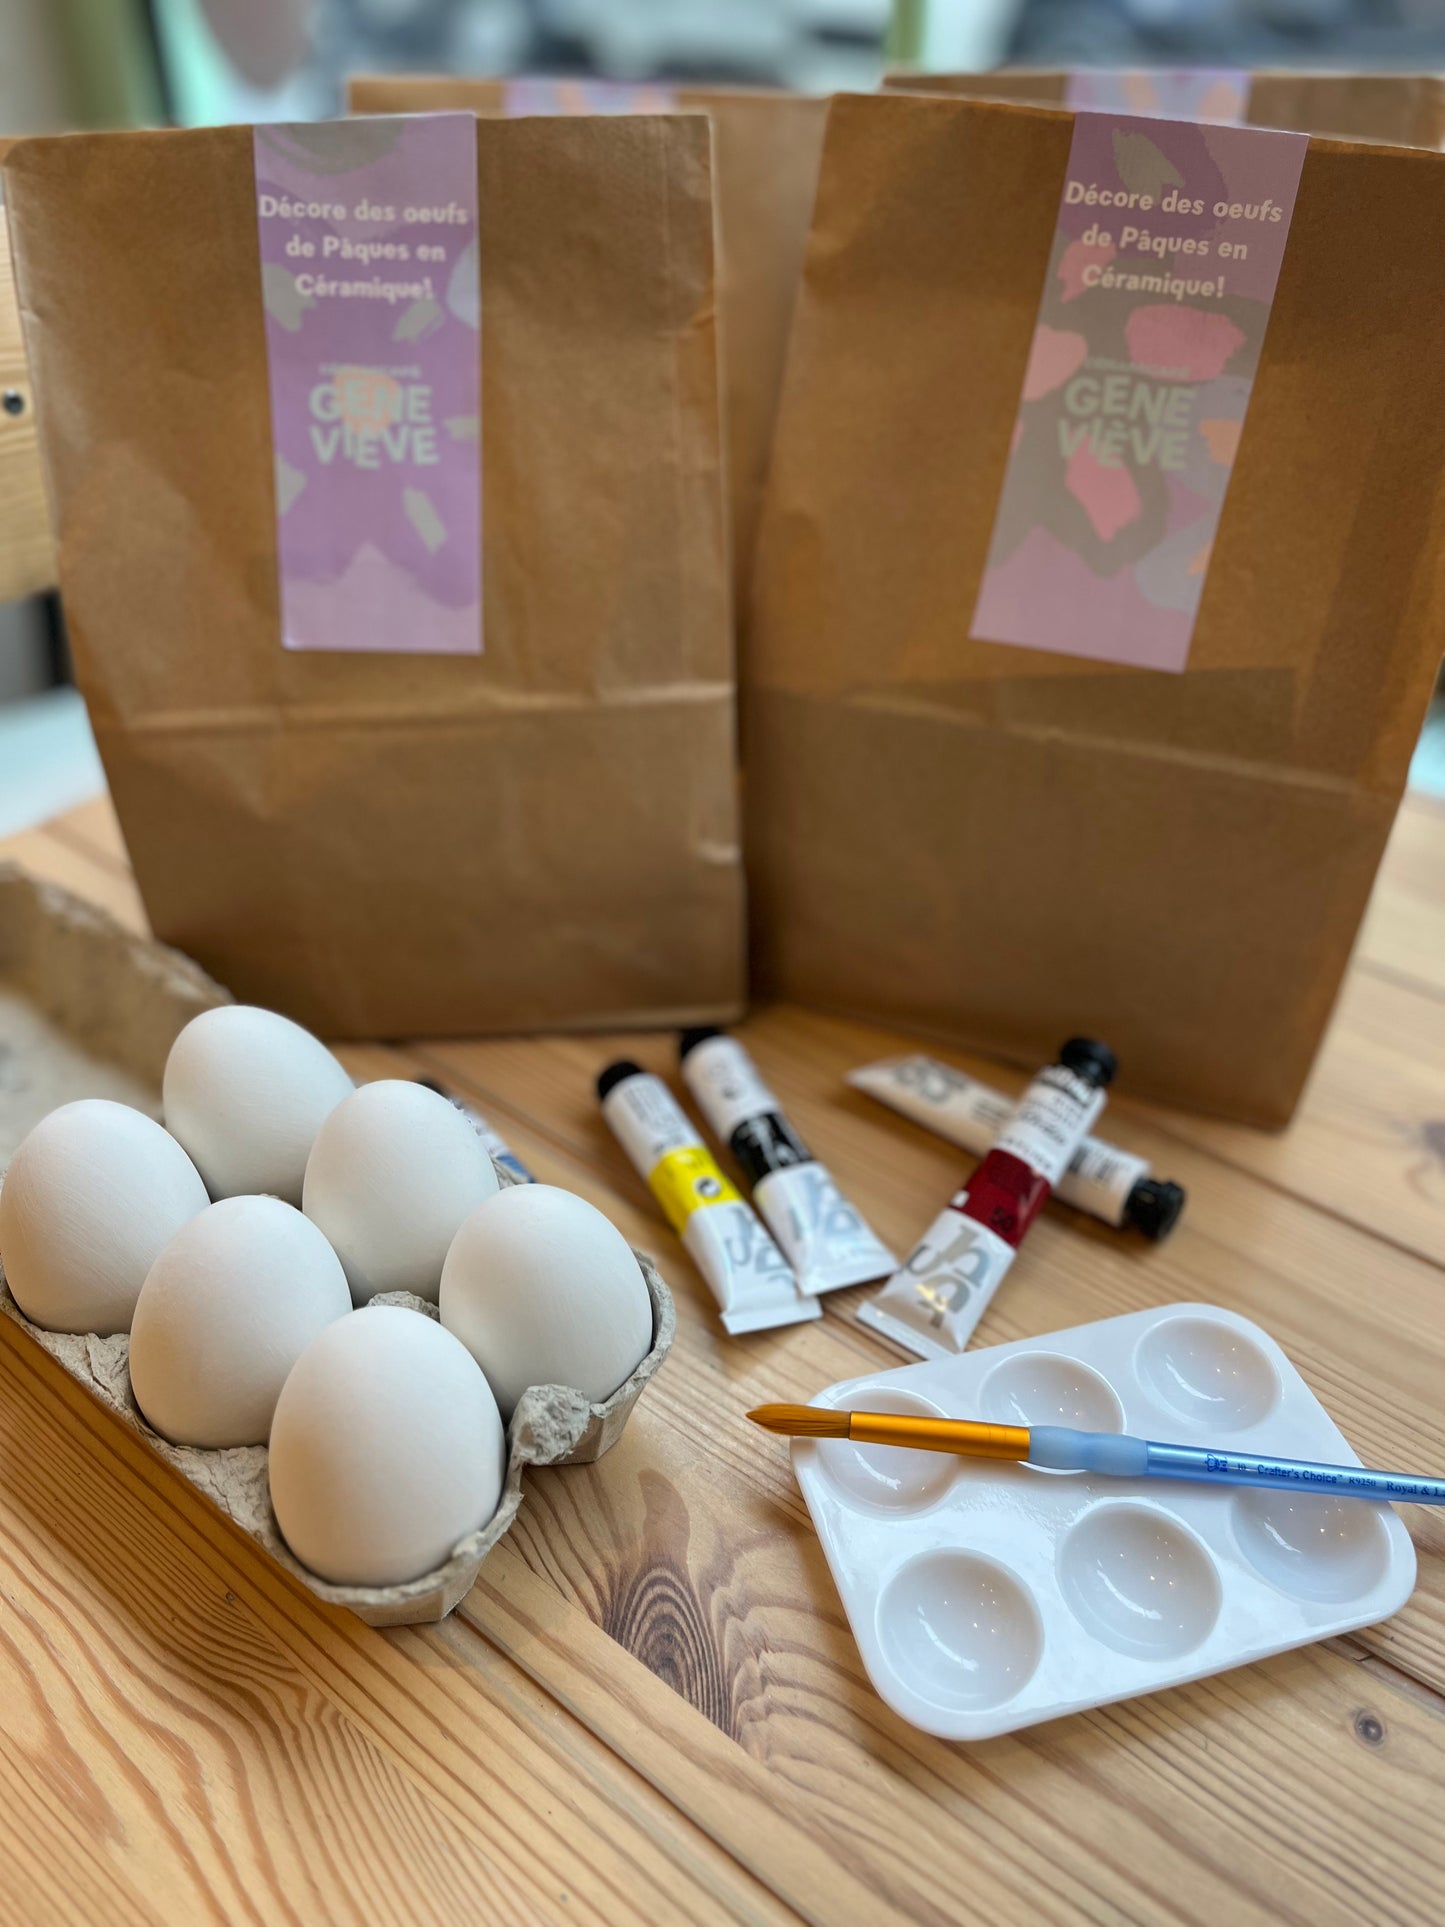 Box Peinture sur céramique - Décorer tes oeufs de Pâques ! (sans cuisson)